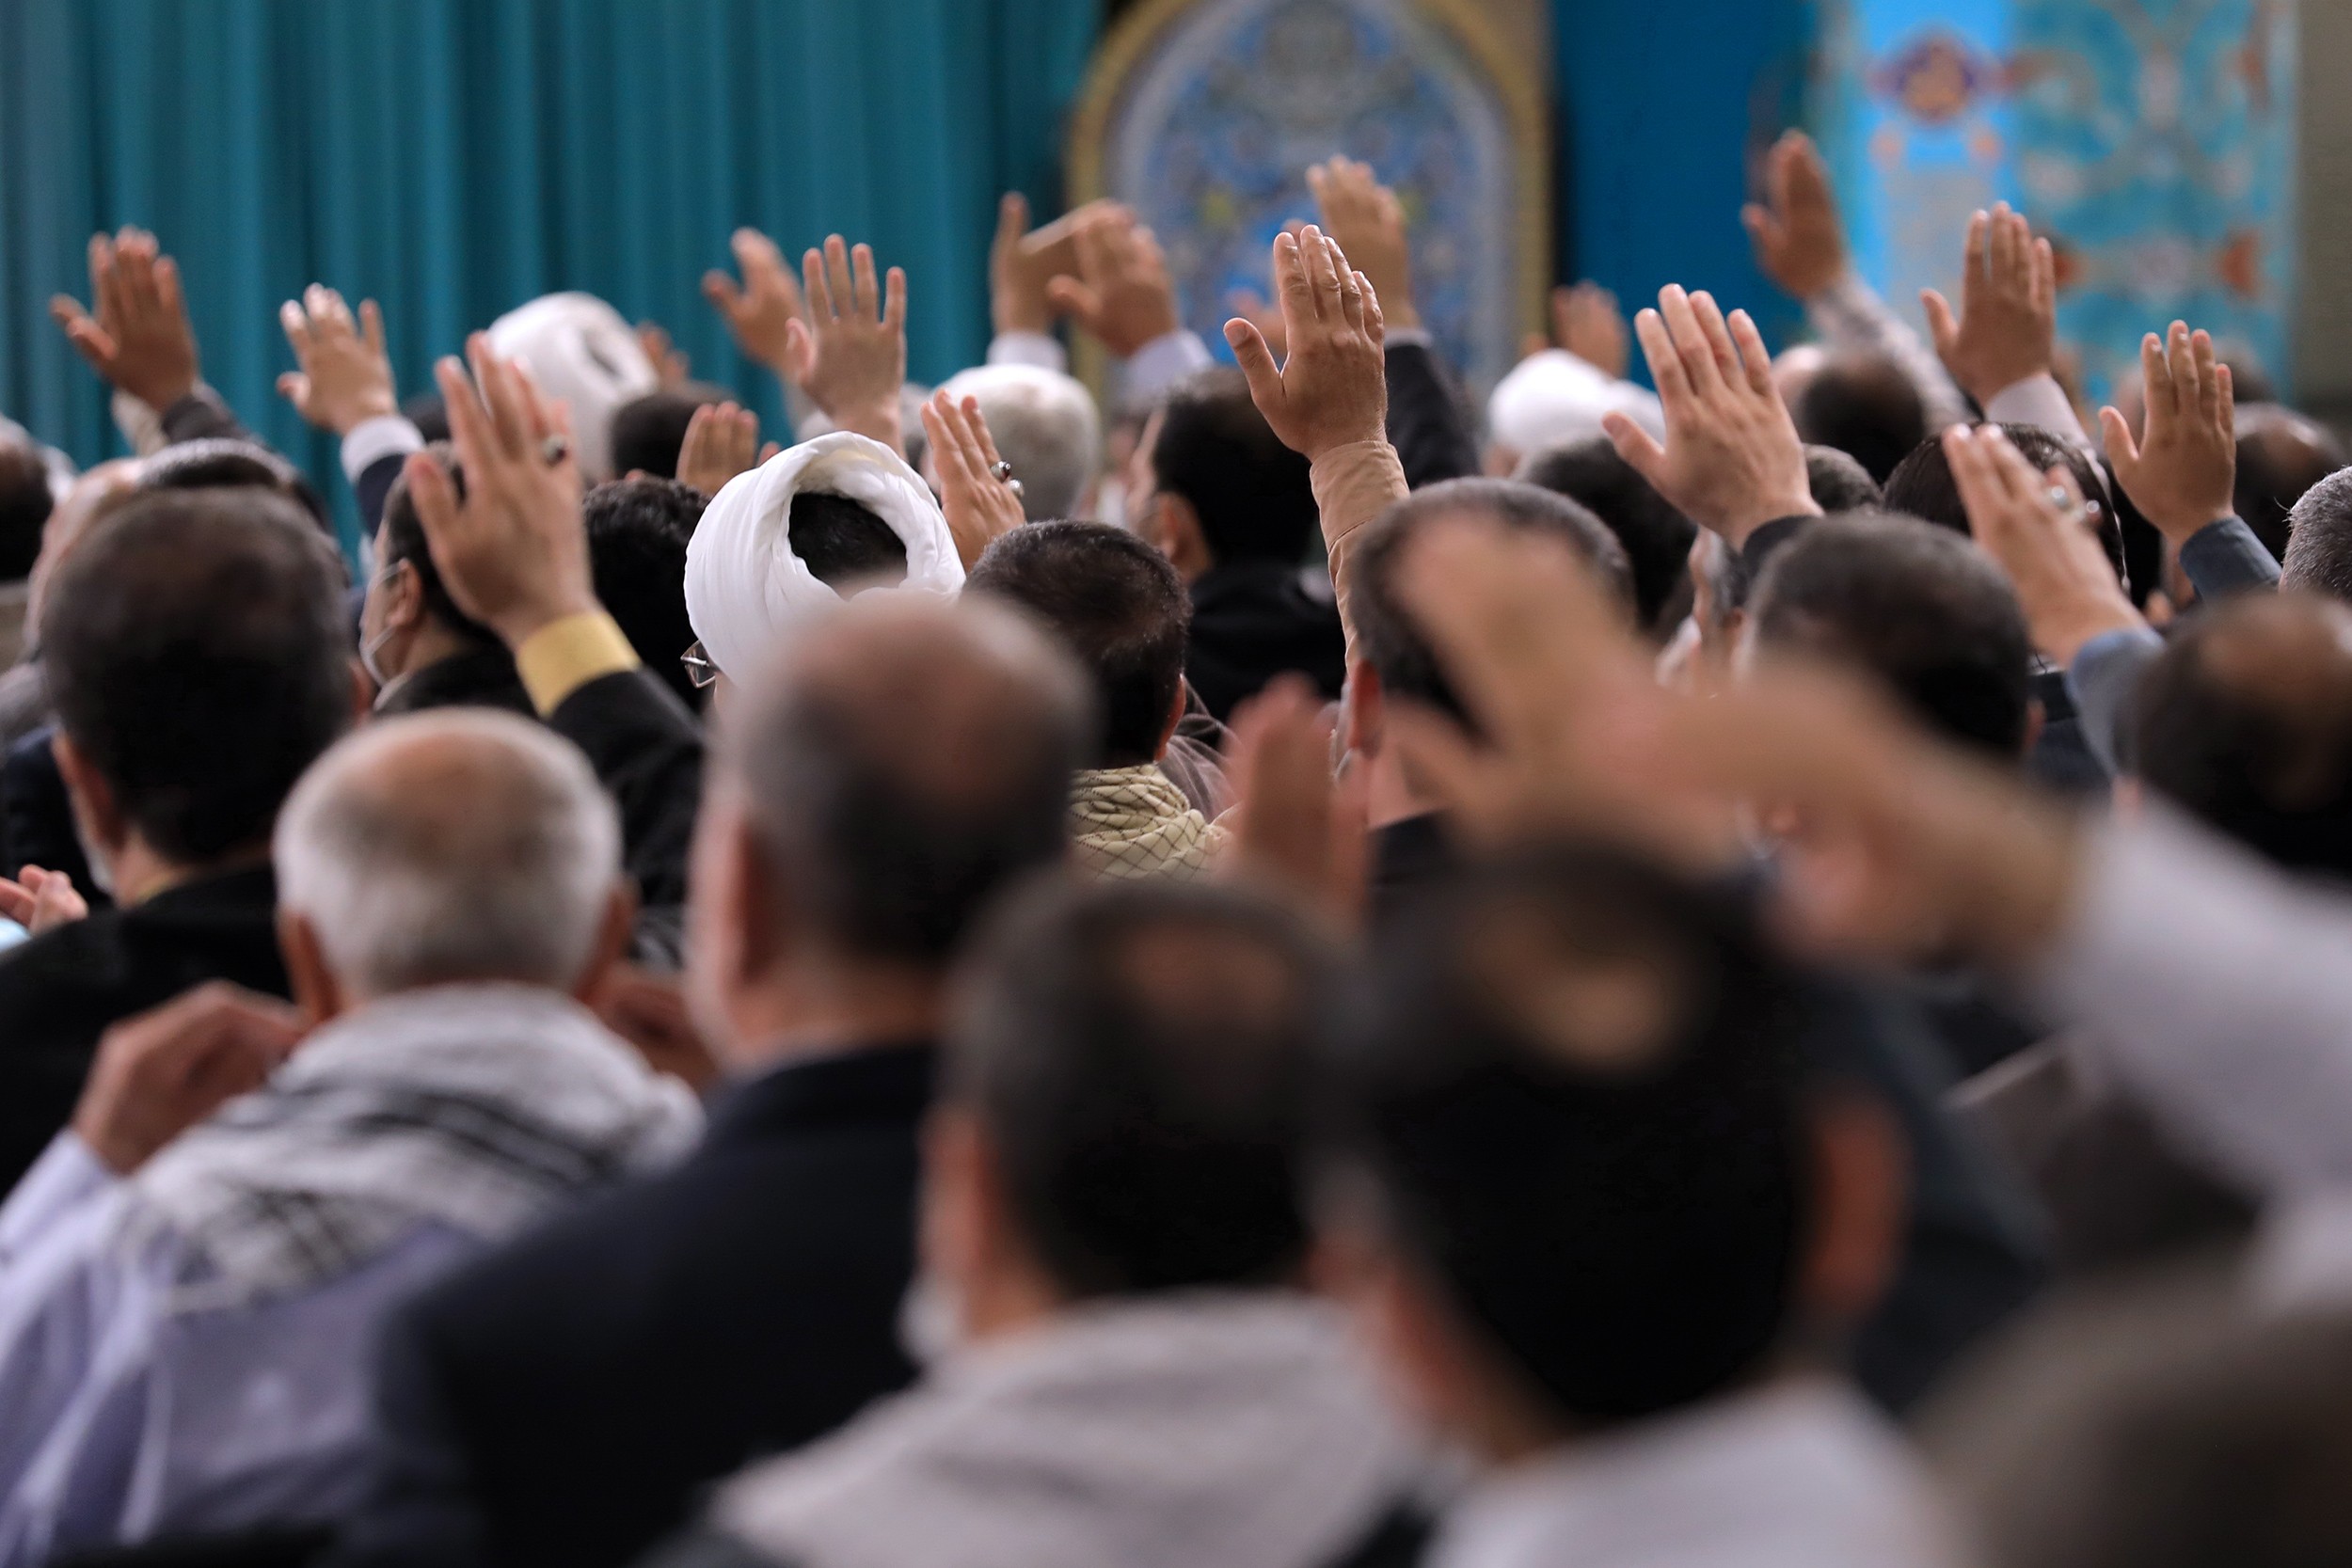 بالصور: الإمام الخامنئي يلتقي أعضاء اللجنة المركزية للمؤتمر الوطني لشهداء سبزوار ونيشابور